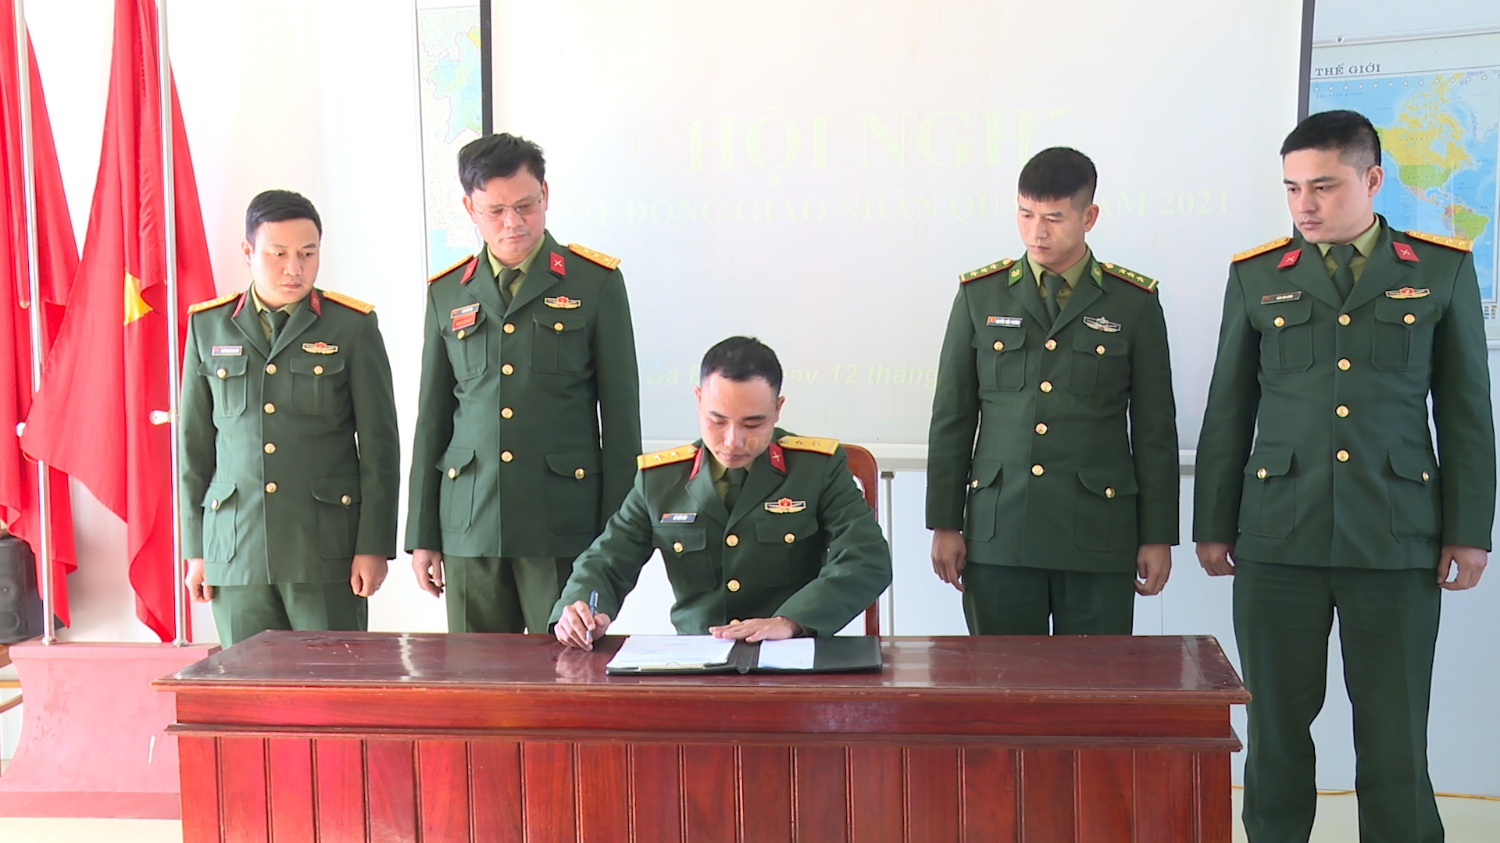 BCH Quân sự thị xã ký kết biên bản hiệp đồng giao, nhận quân năm 2021 với các đơn vị nhận quân